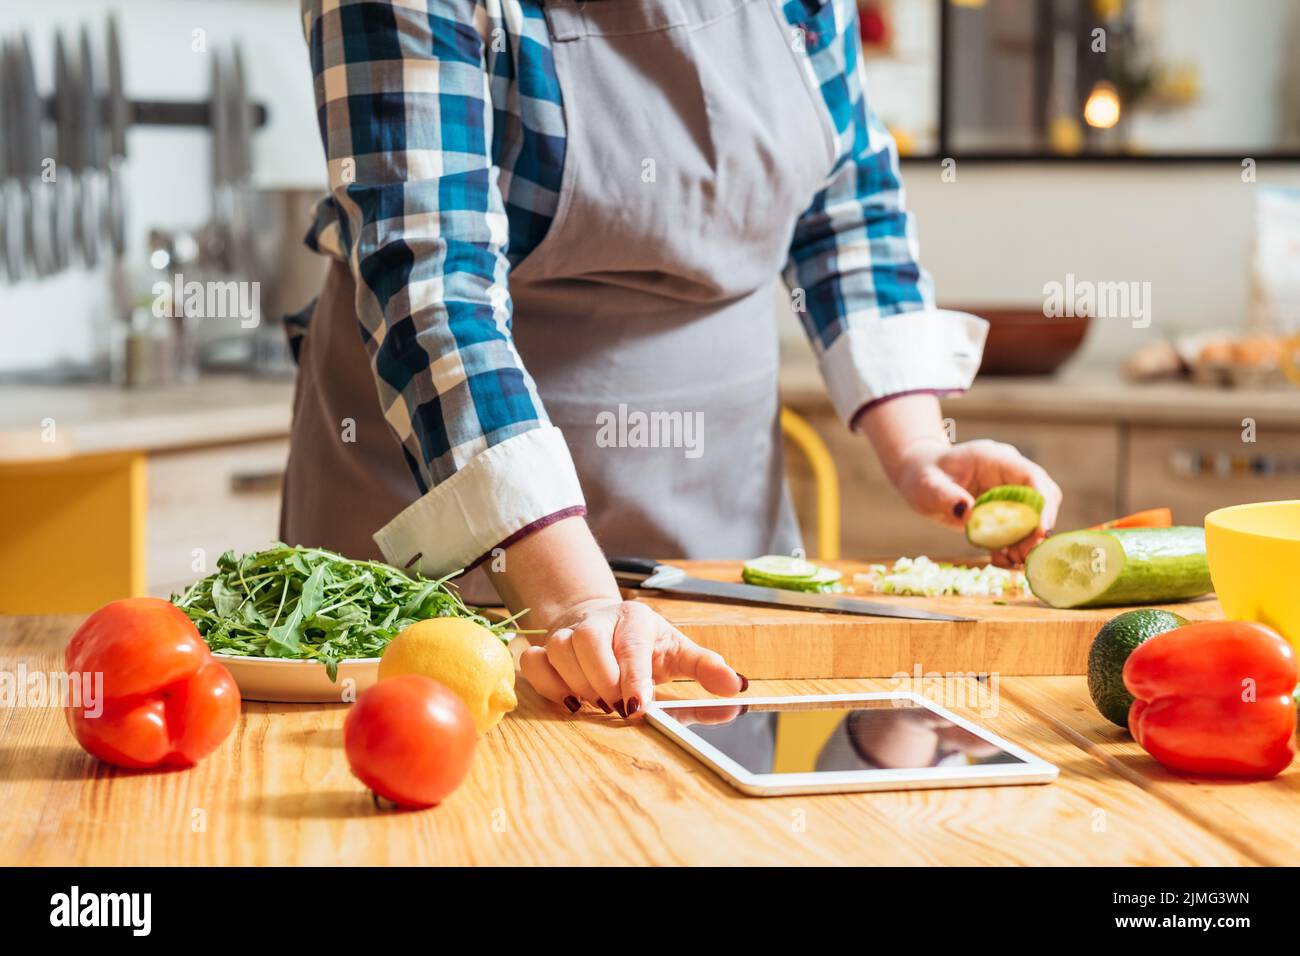 lezione di cucina online dieta sana cibo vegetariano Foto Stock